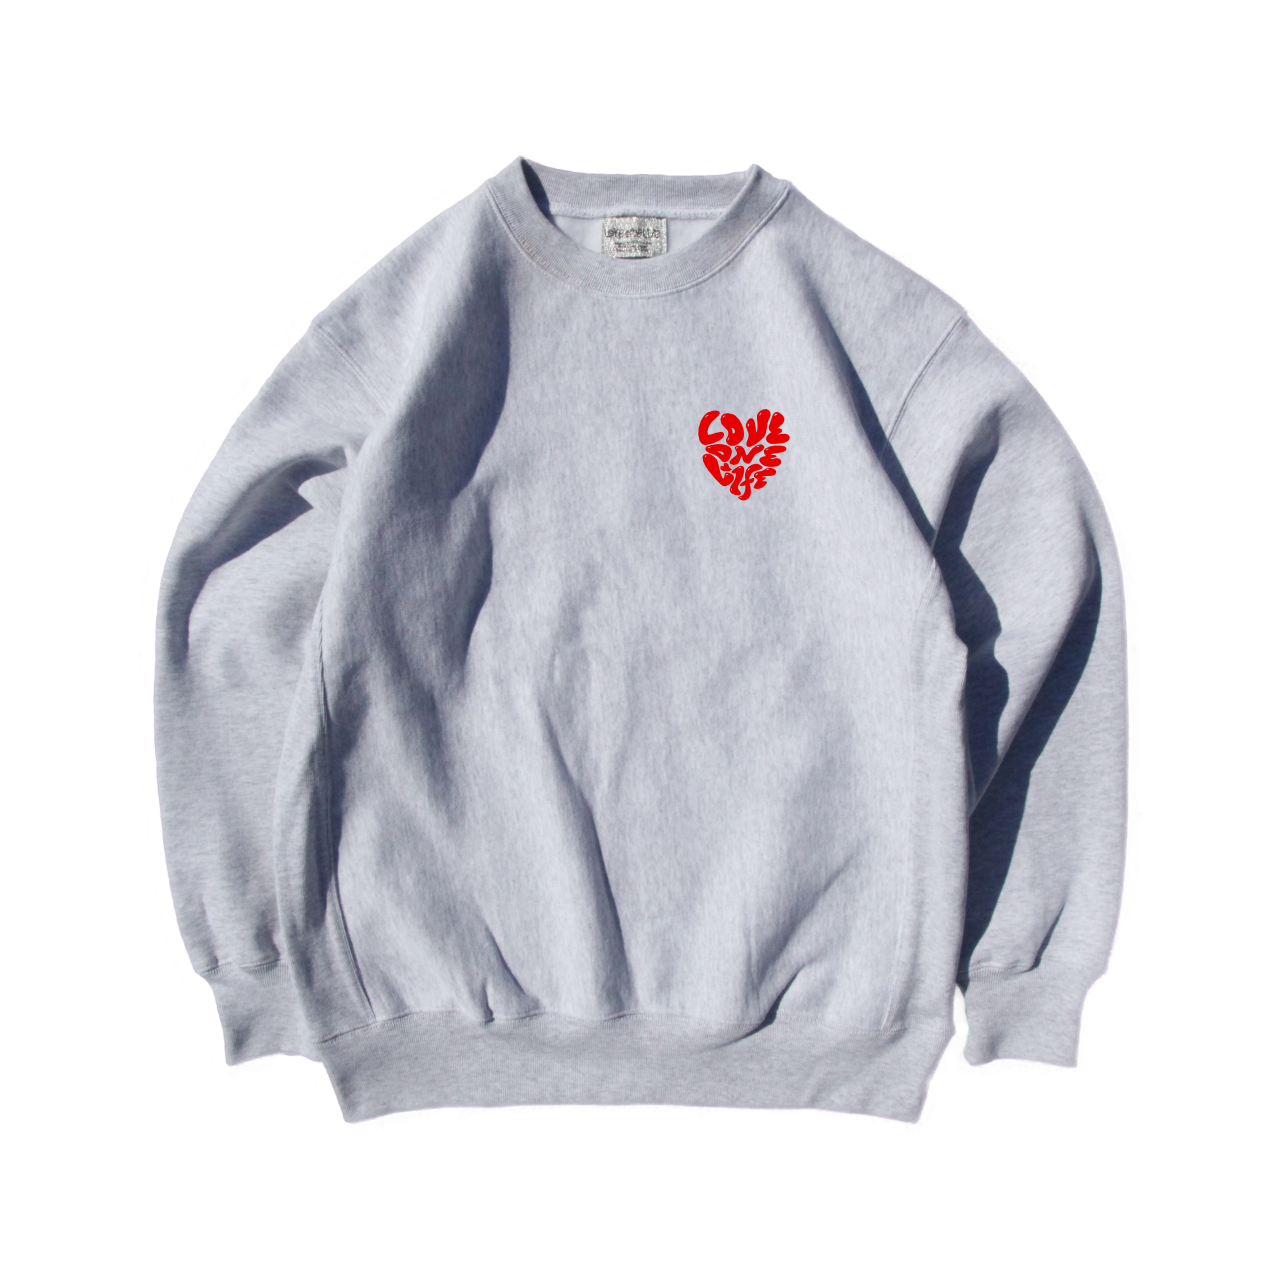 heart reverse weave sweater in gray